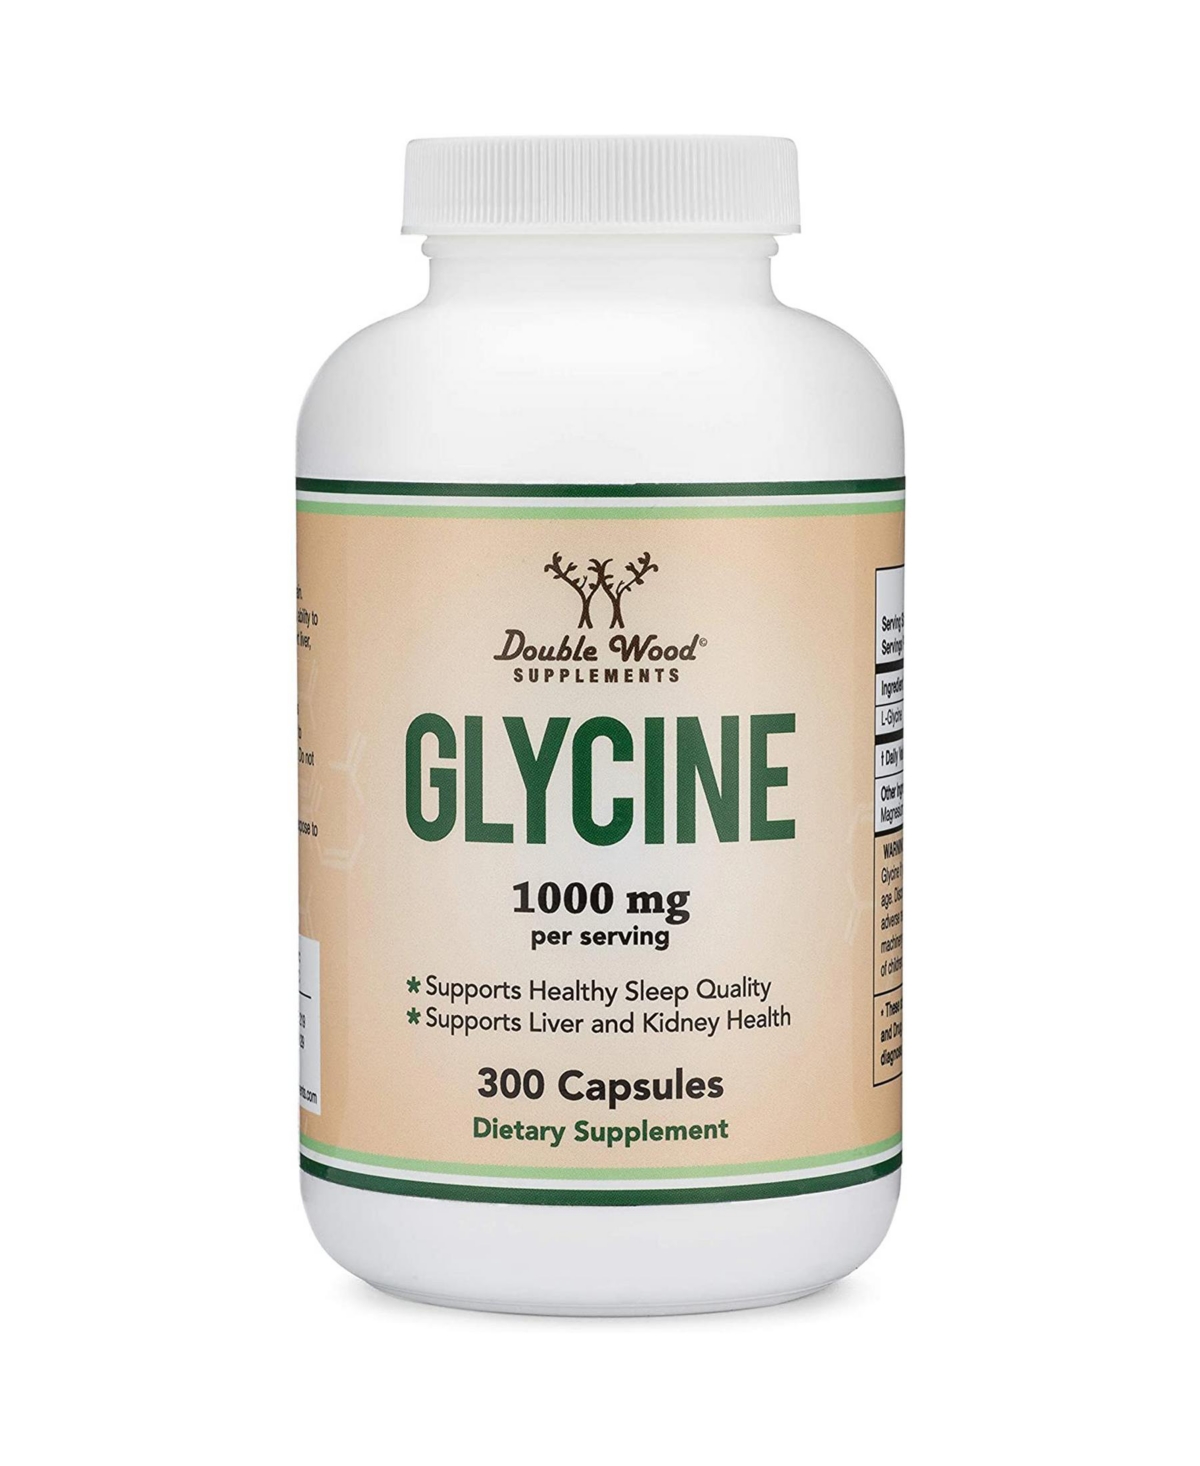 Glycine - 300 capsules, 1000 mg servings